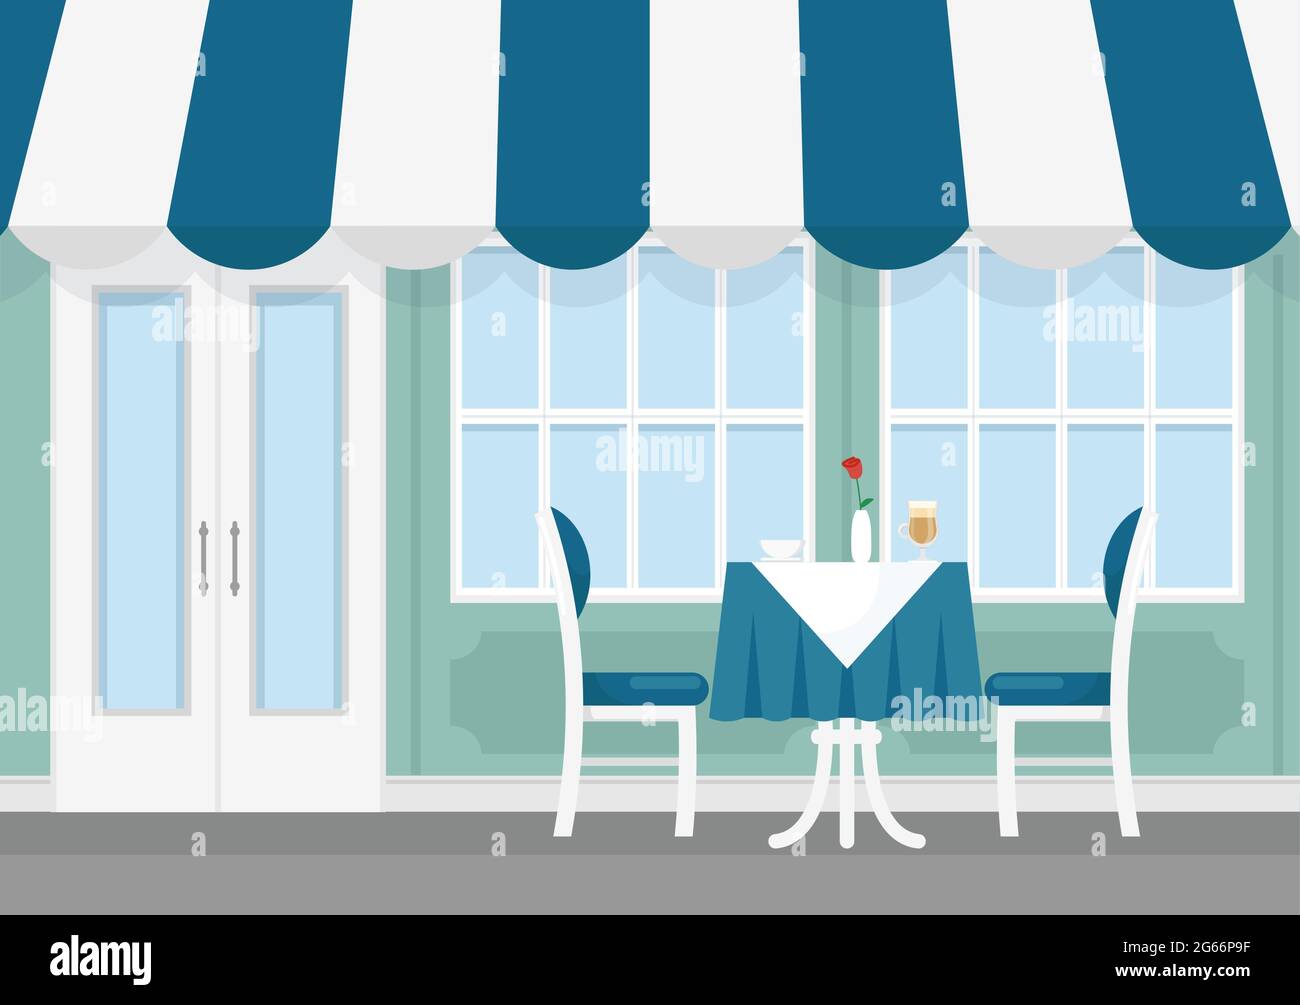 Illustrazione vettoriale di tavolo e sedie di un piccolo caffè di strada con tenda a strisce, l'esterno del caffè in stile piano cartoon. Illustrazione Vettoriale